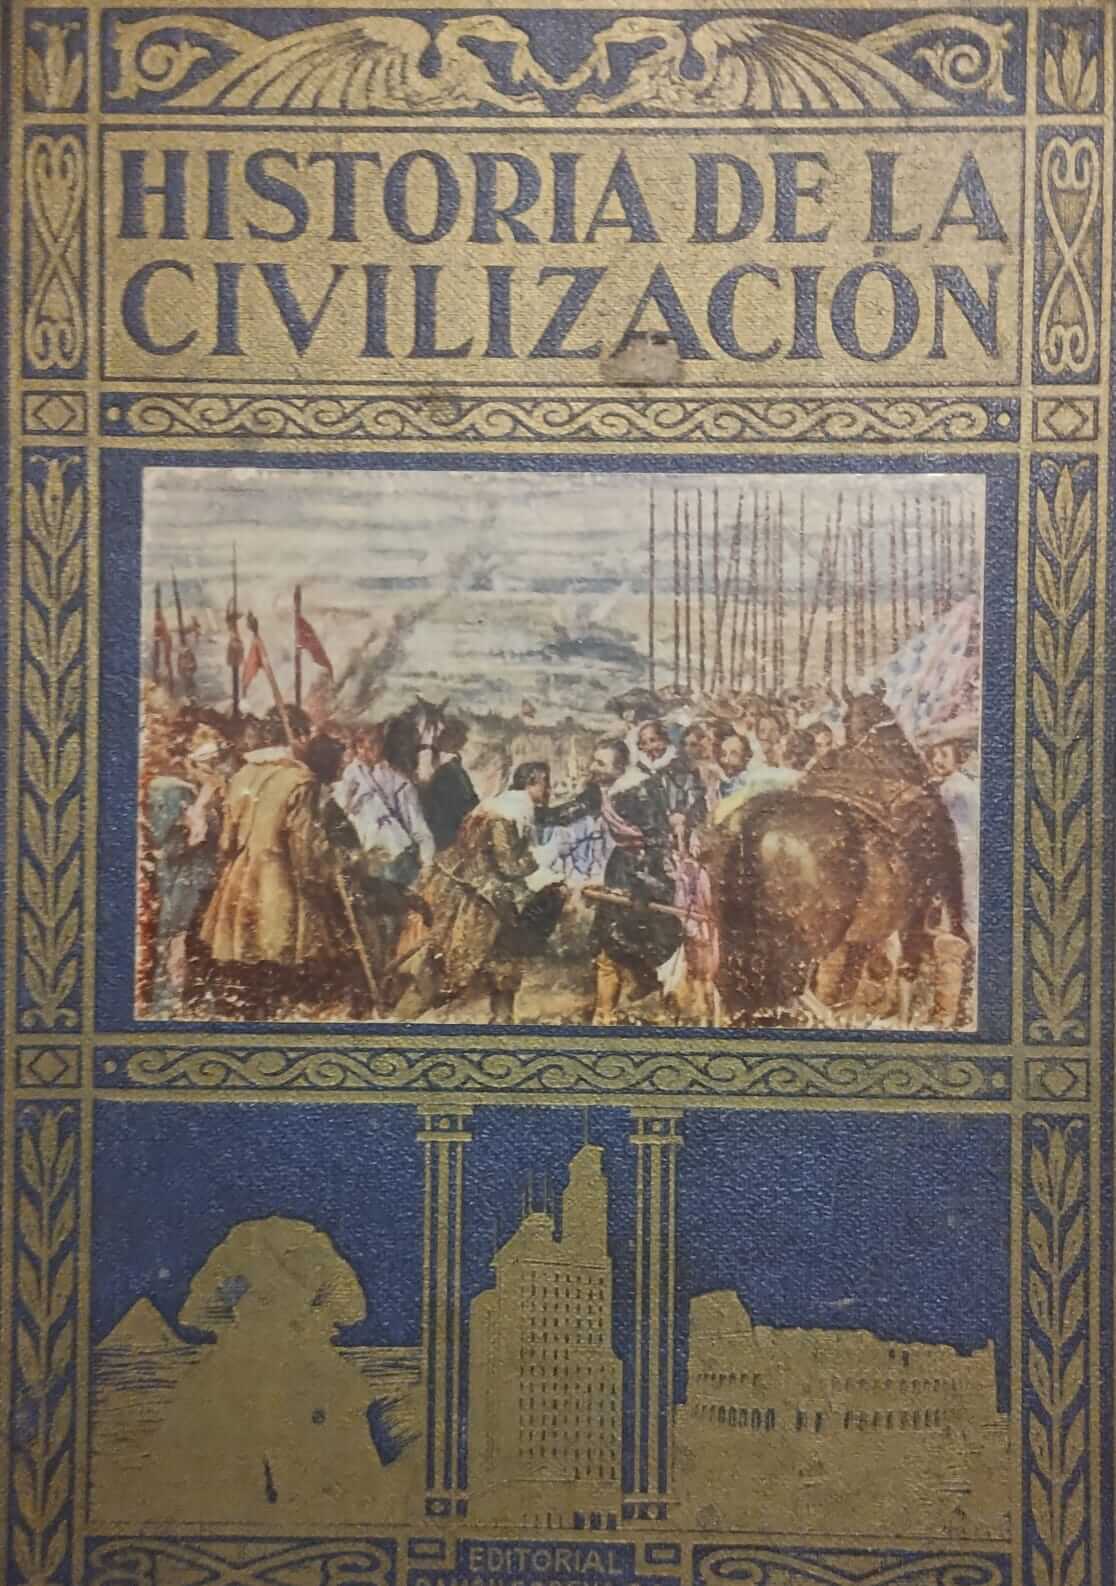 Historia de la civilización